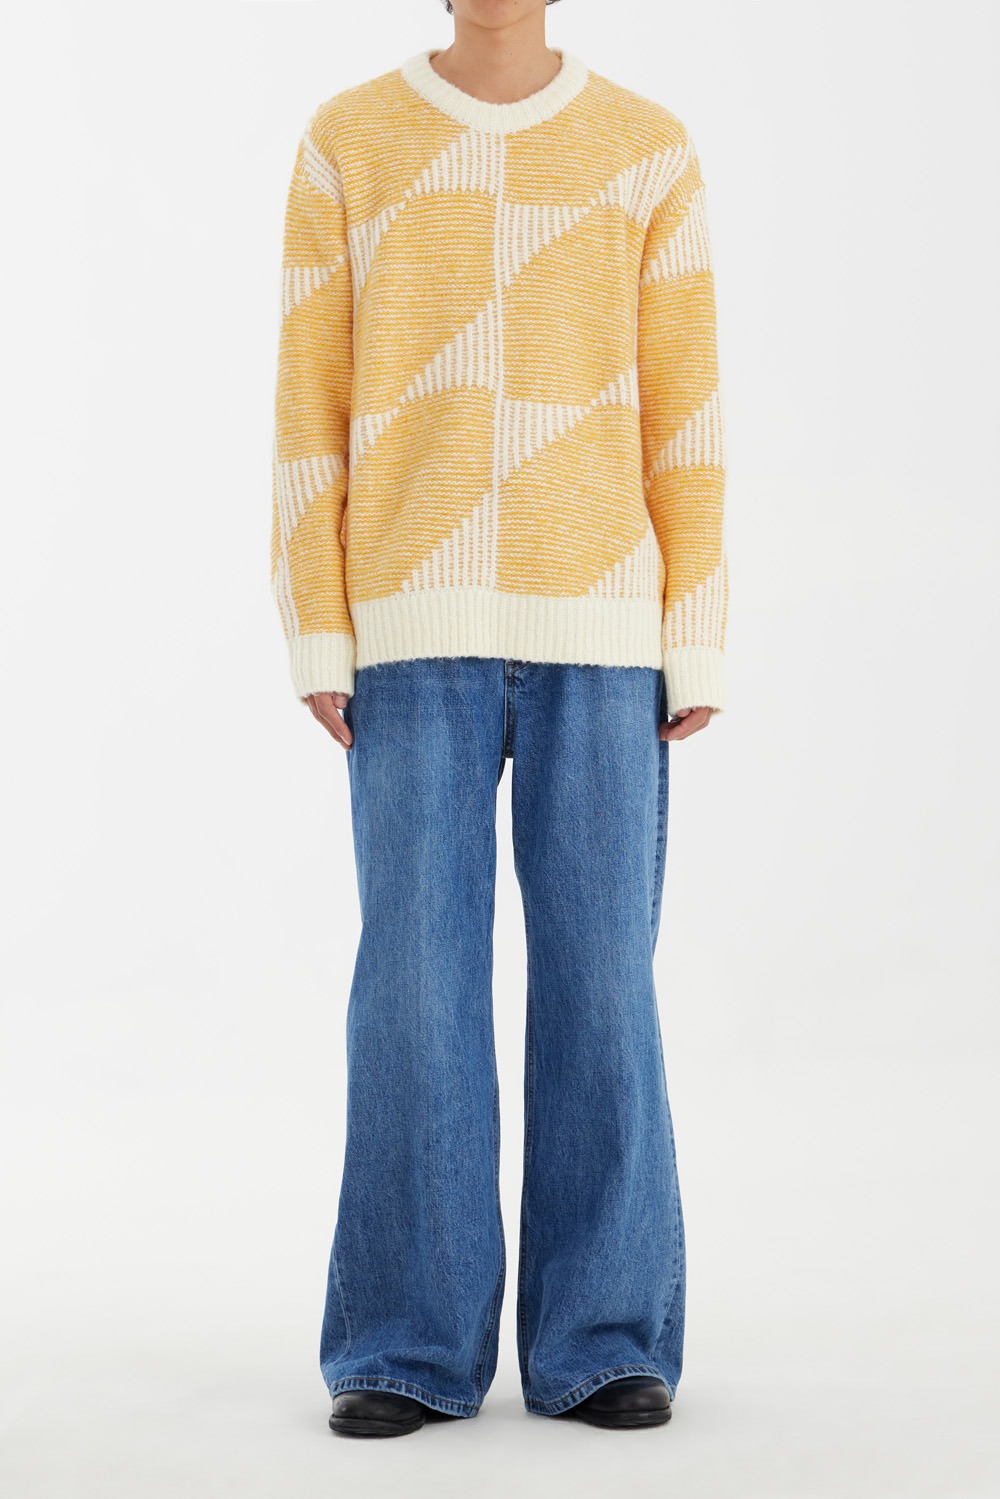 Hexagonal Jacquard Hairley Knitwear - Beige